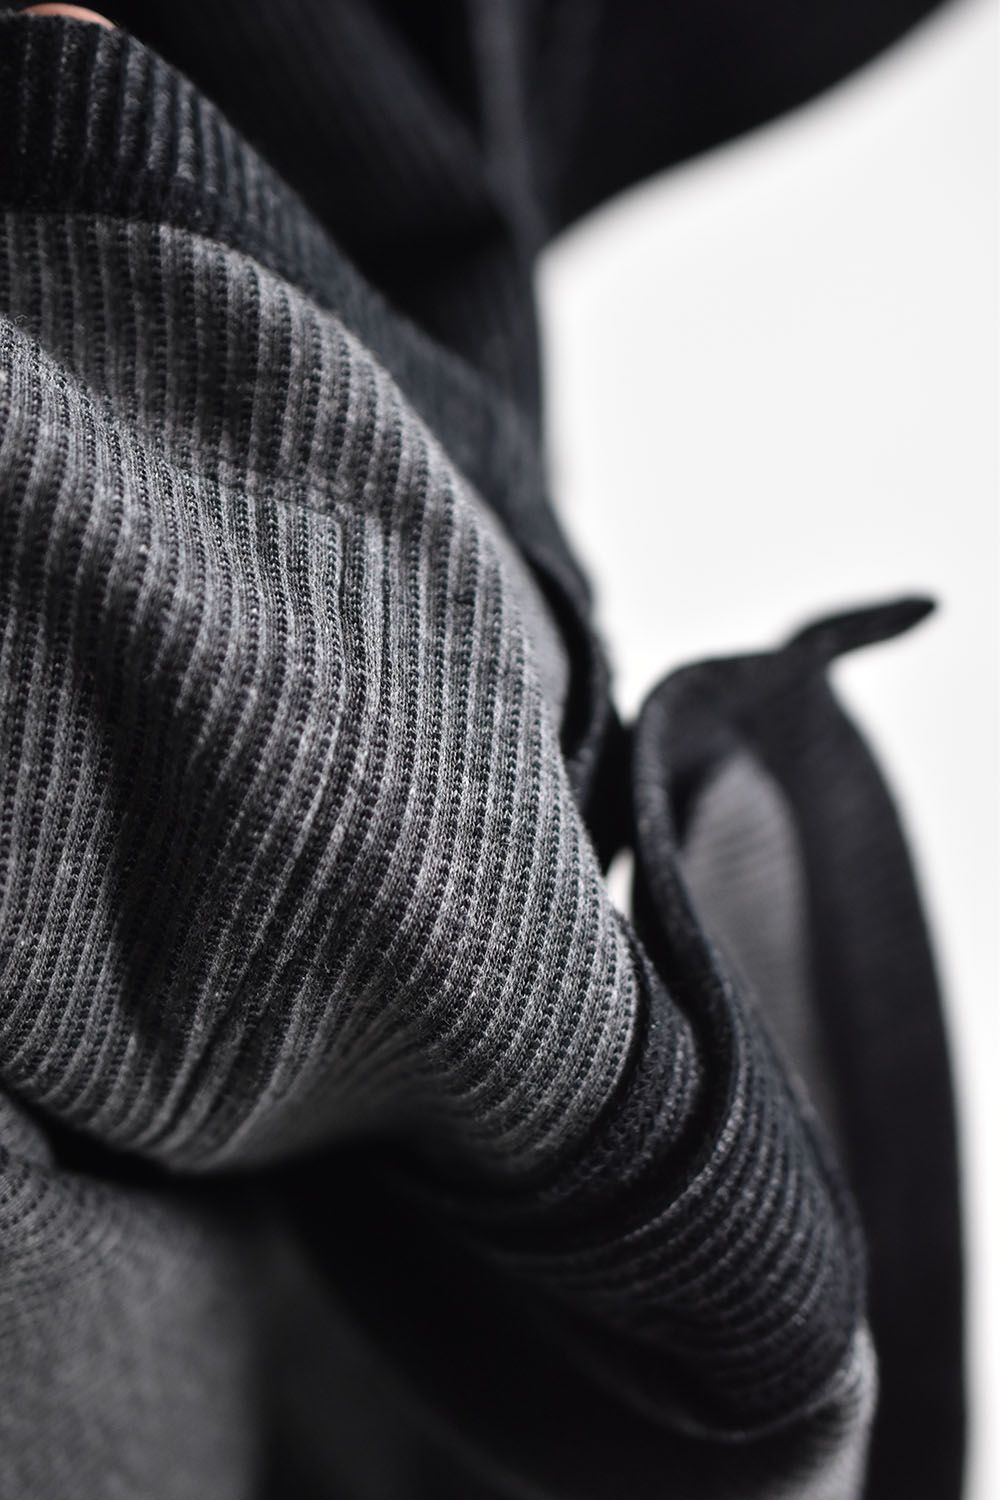 Stripe Knit Tee"Black"/ストライプニットTee"ブラック"